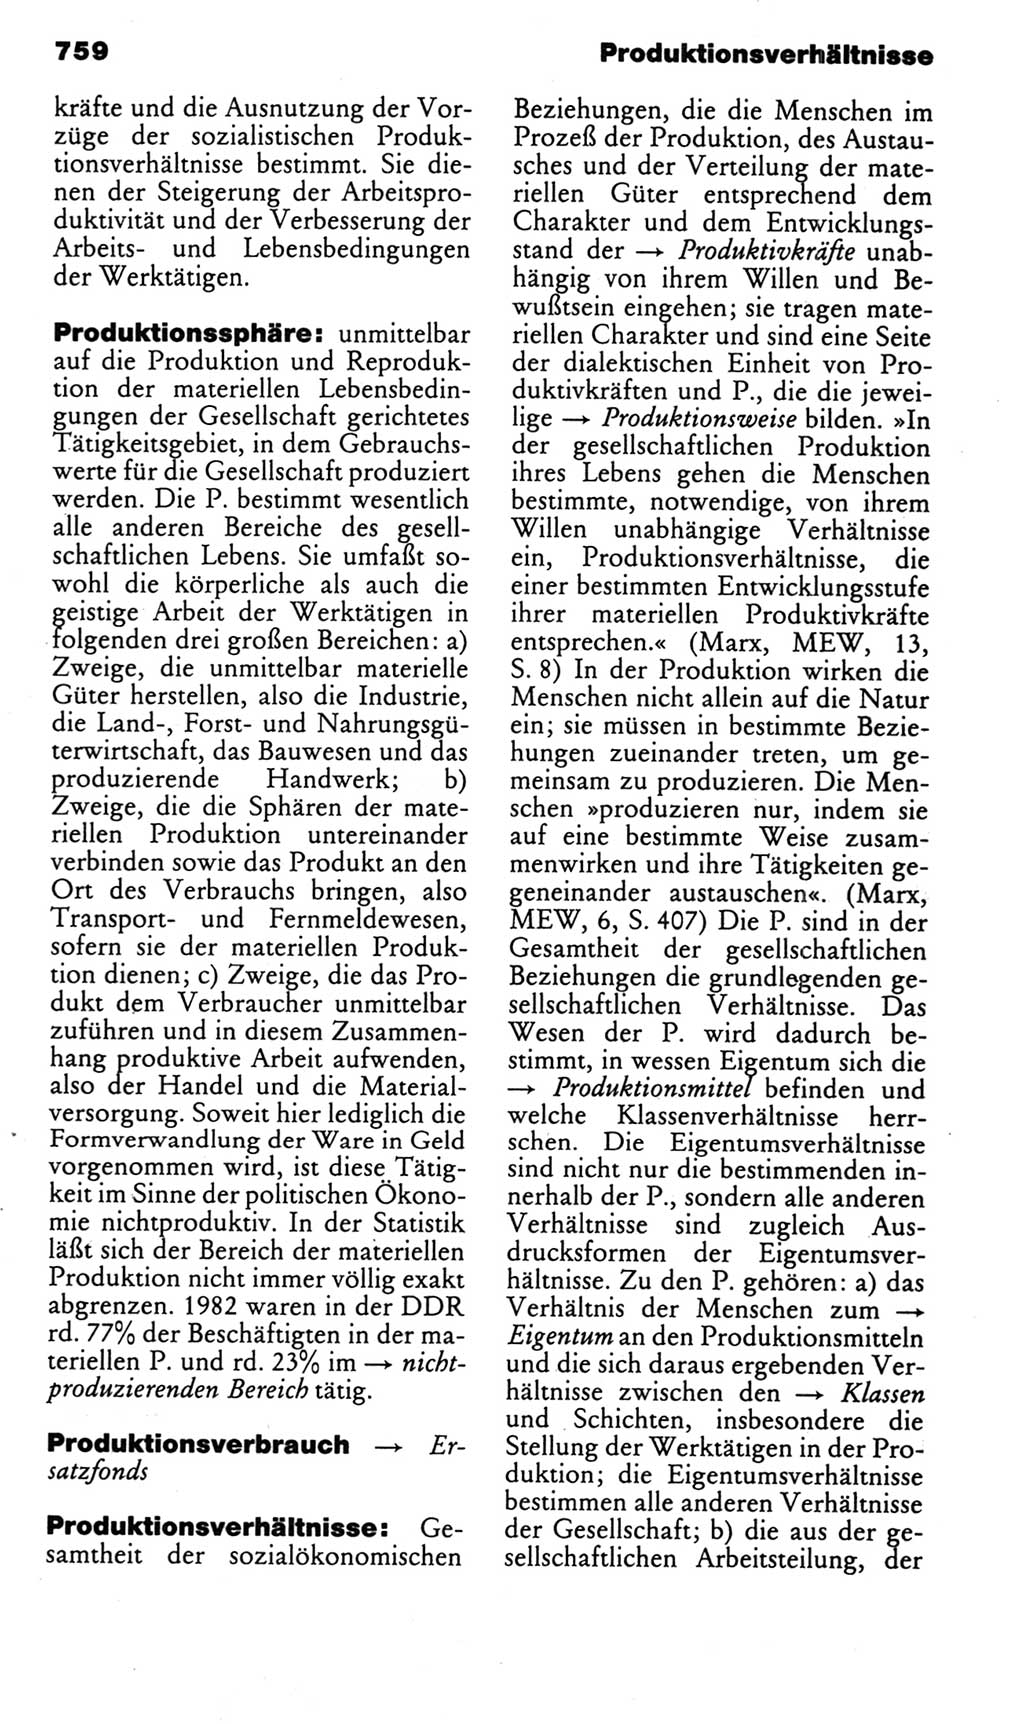 Kleines politisches Wörterbuch [Deutsche Demokratische Republik (DDR)] 1985, Seite 759 (Kl. pol. Wb. DDR 1985, S. 759)